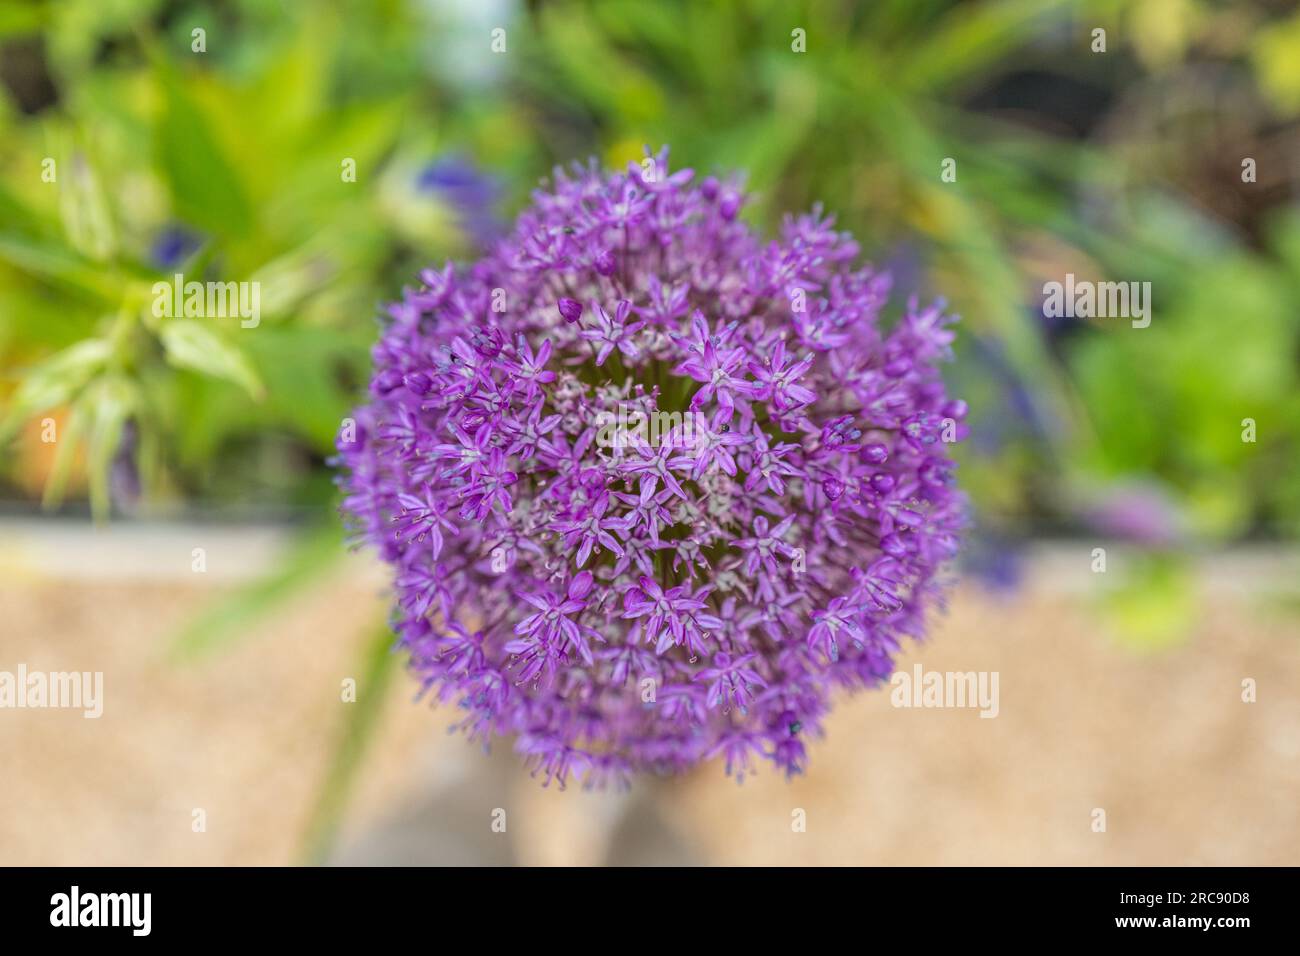 Purple Allium Ambassador plant in full flower. Stock Photo